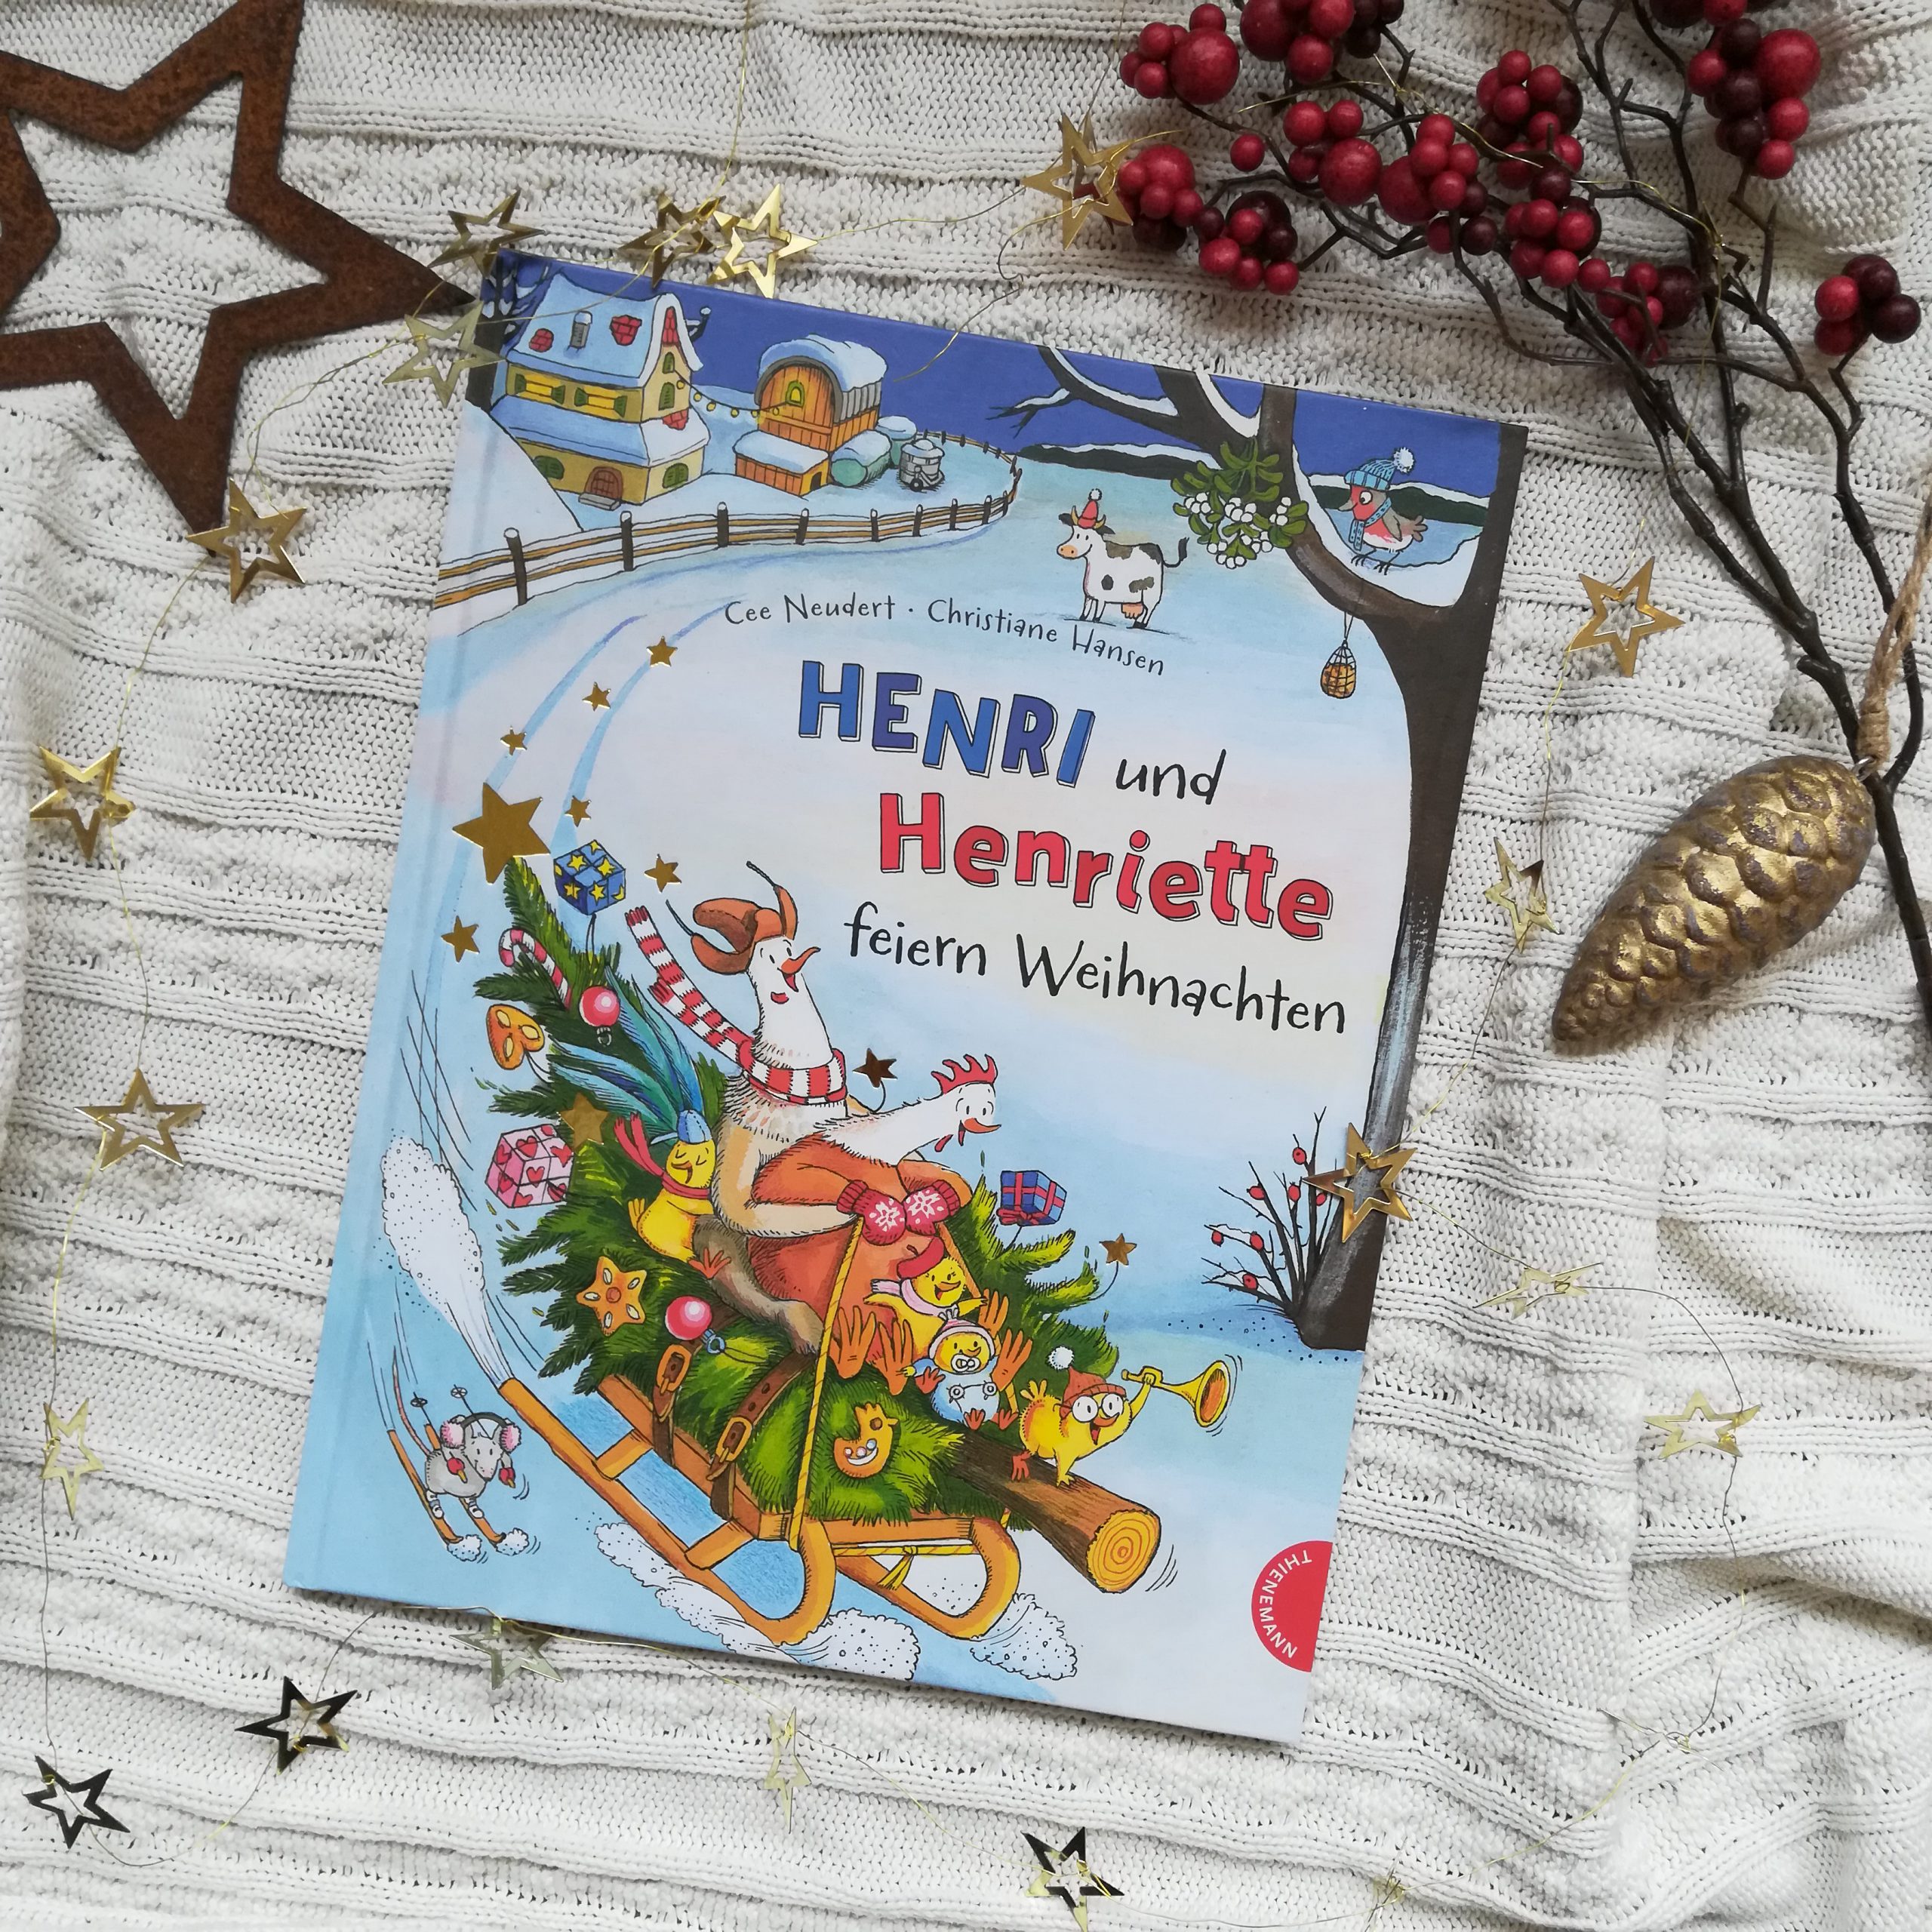 2 Henri und Henriette 2 Henri und Henriette feiern Weihnachten